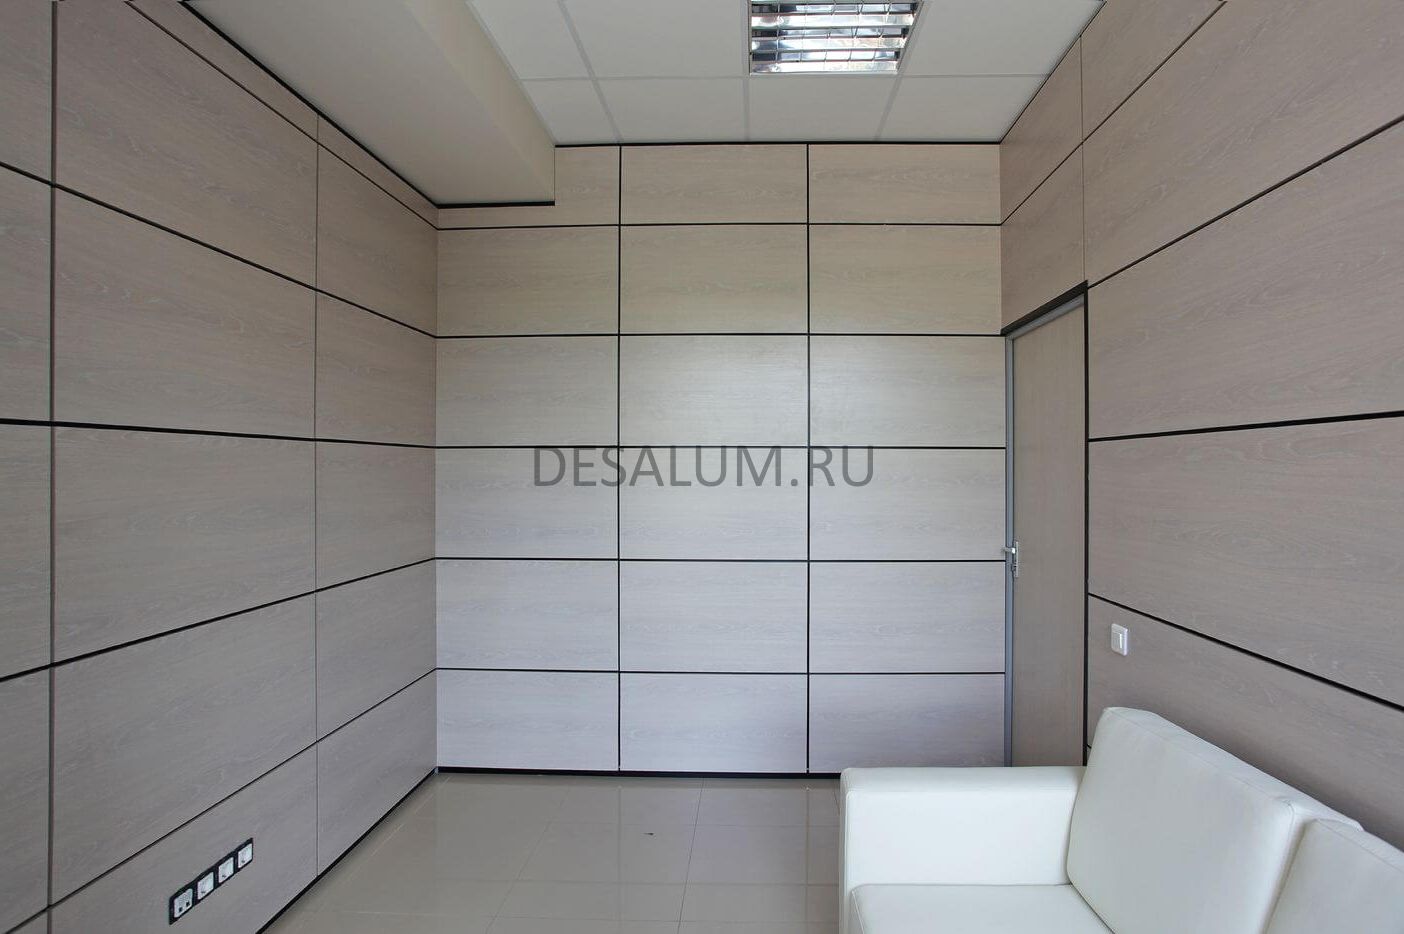 Стеновые панели МДФ для кухни desalum